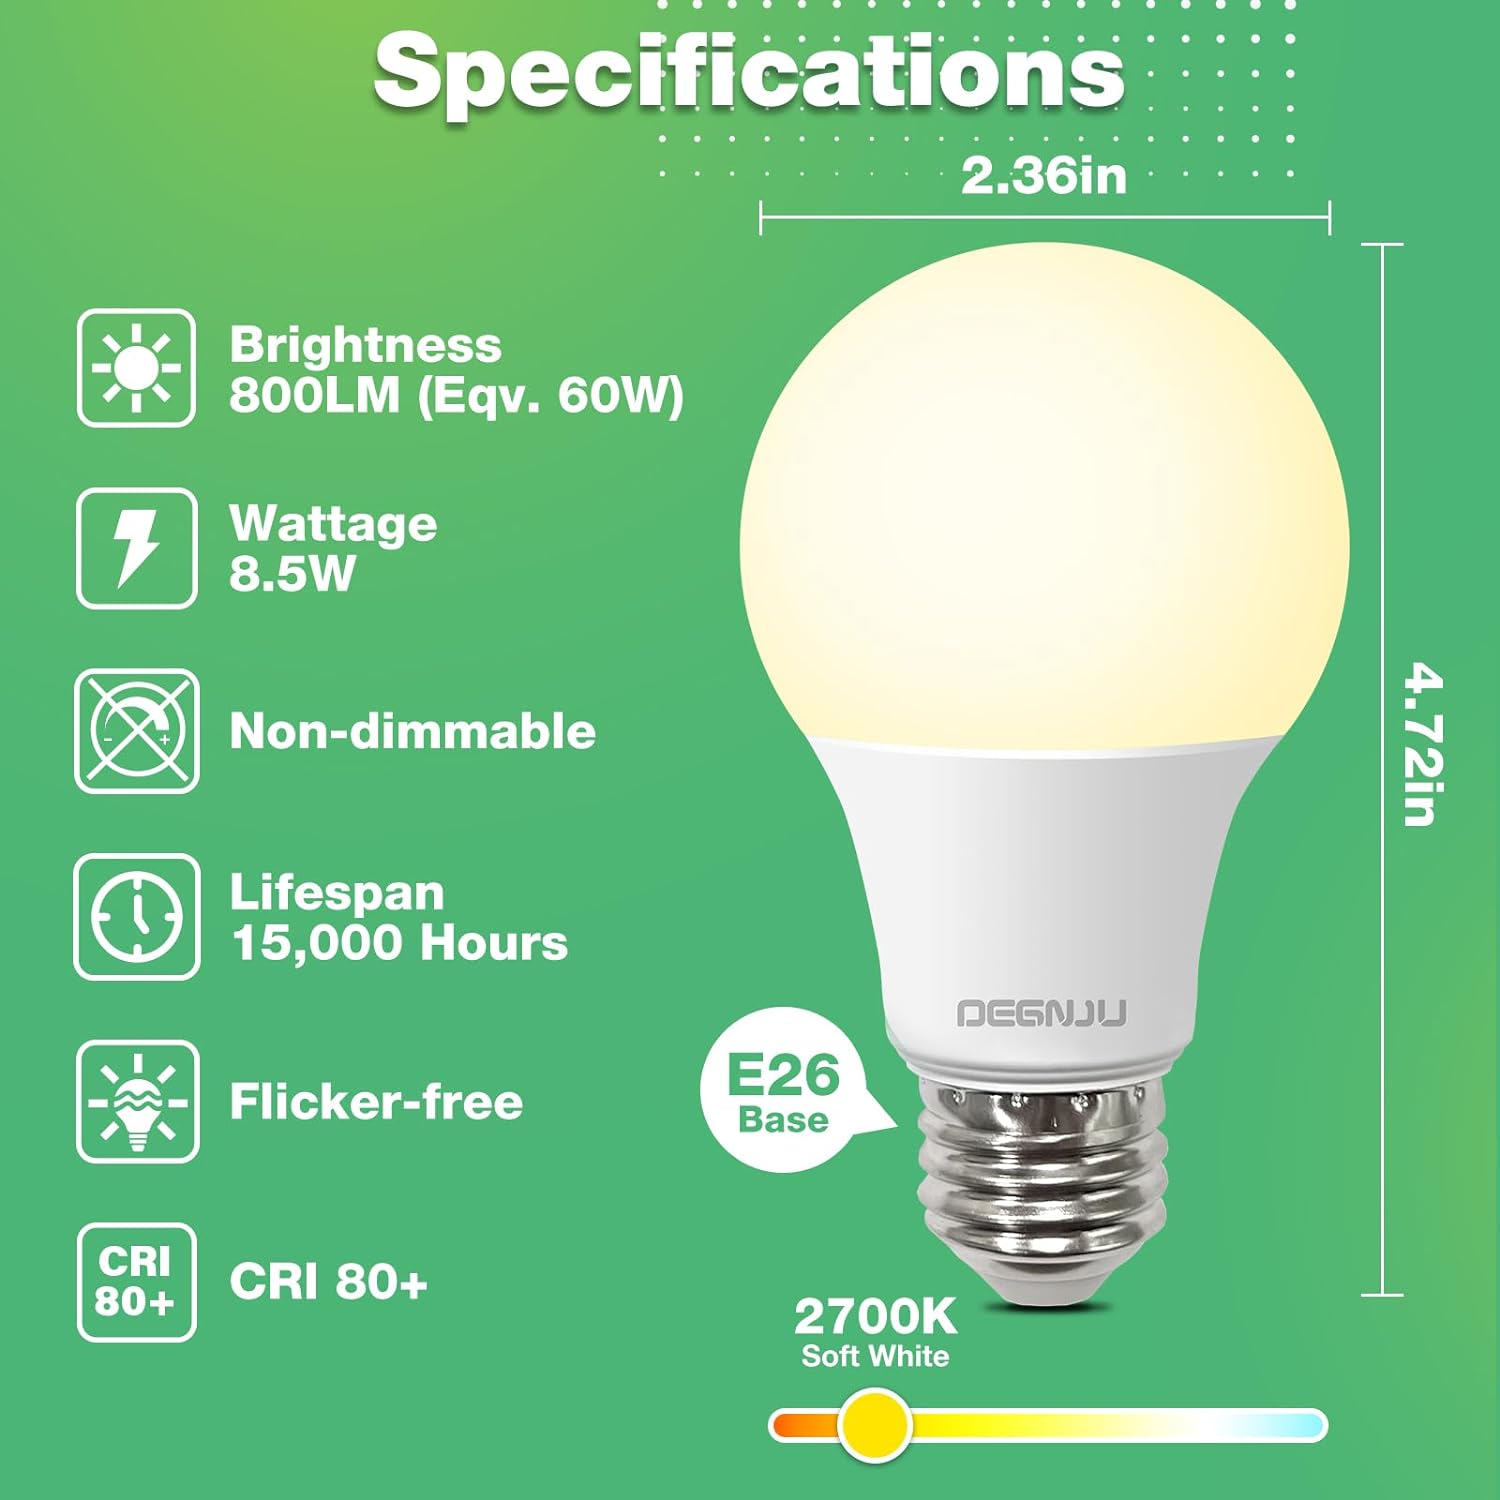 DEGNJU A19 LED Light Bulbs, 100 Watt Equivalent LED Bulbs, Daylight 5000K, 1500 Lumens, E26 Standard Base, Non-Dimmable, 13W Bright White LED Bulbs for Bedroom Living Room Home Office, 3 Pack